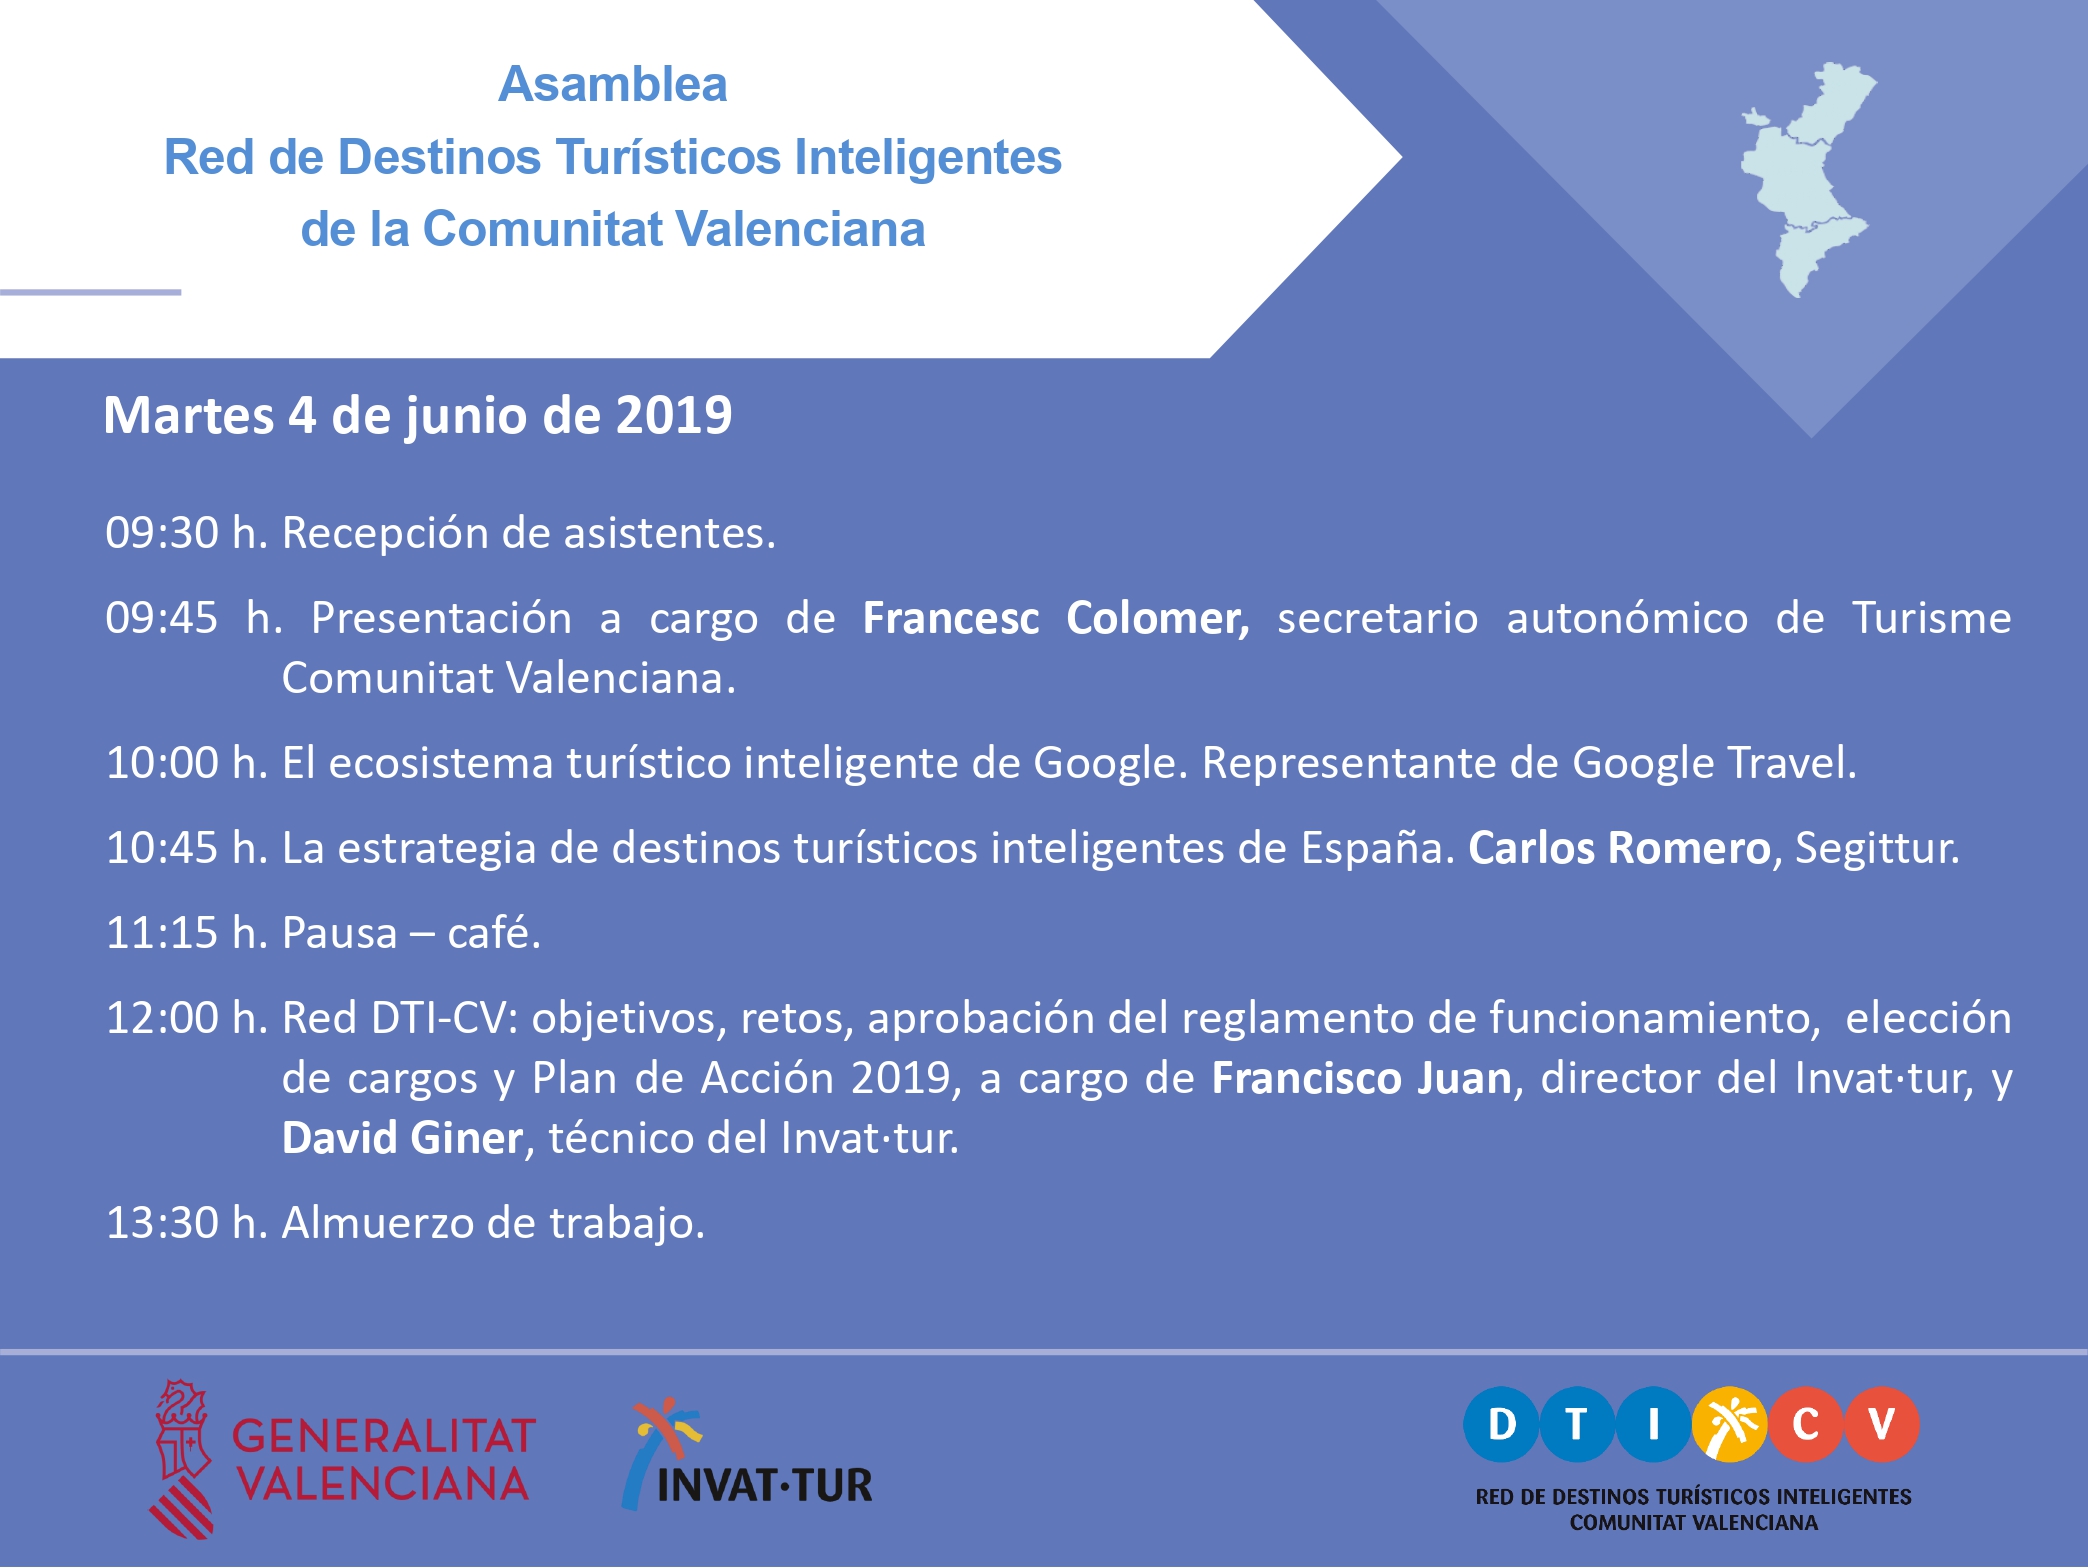 Programa de la Asamblea de la Red de Destinos Turísticos Inteligentes de la Comunitat Valenciana, Red DTICV, 2019